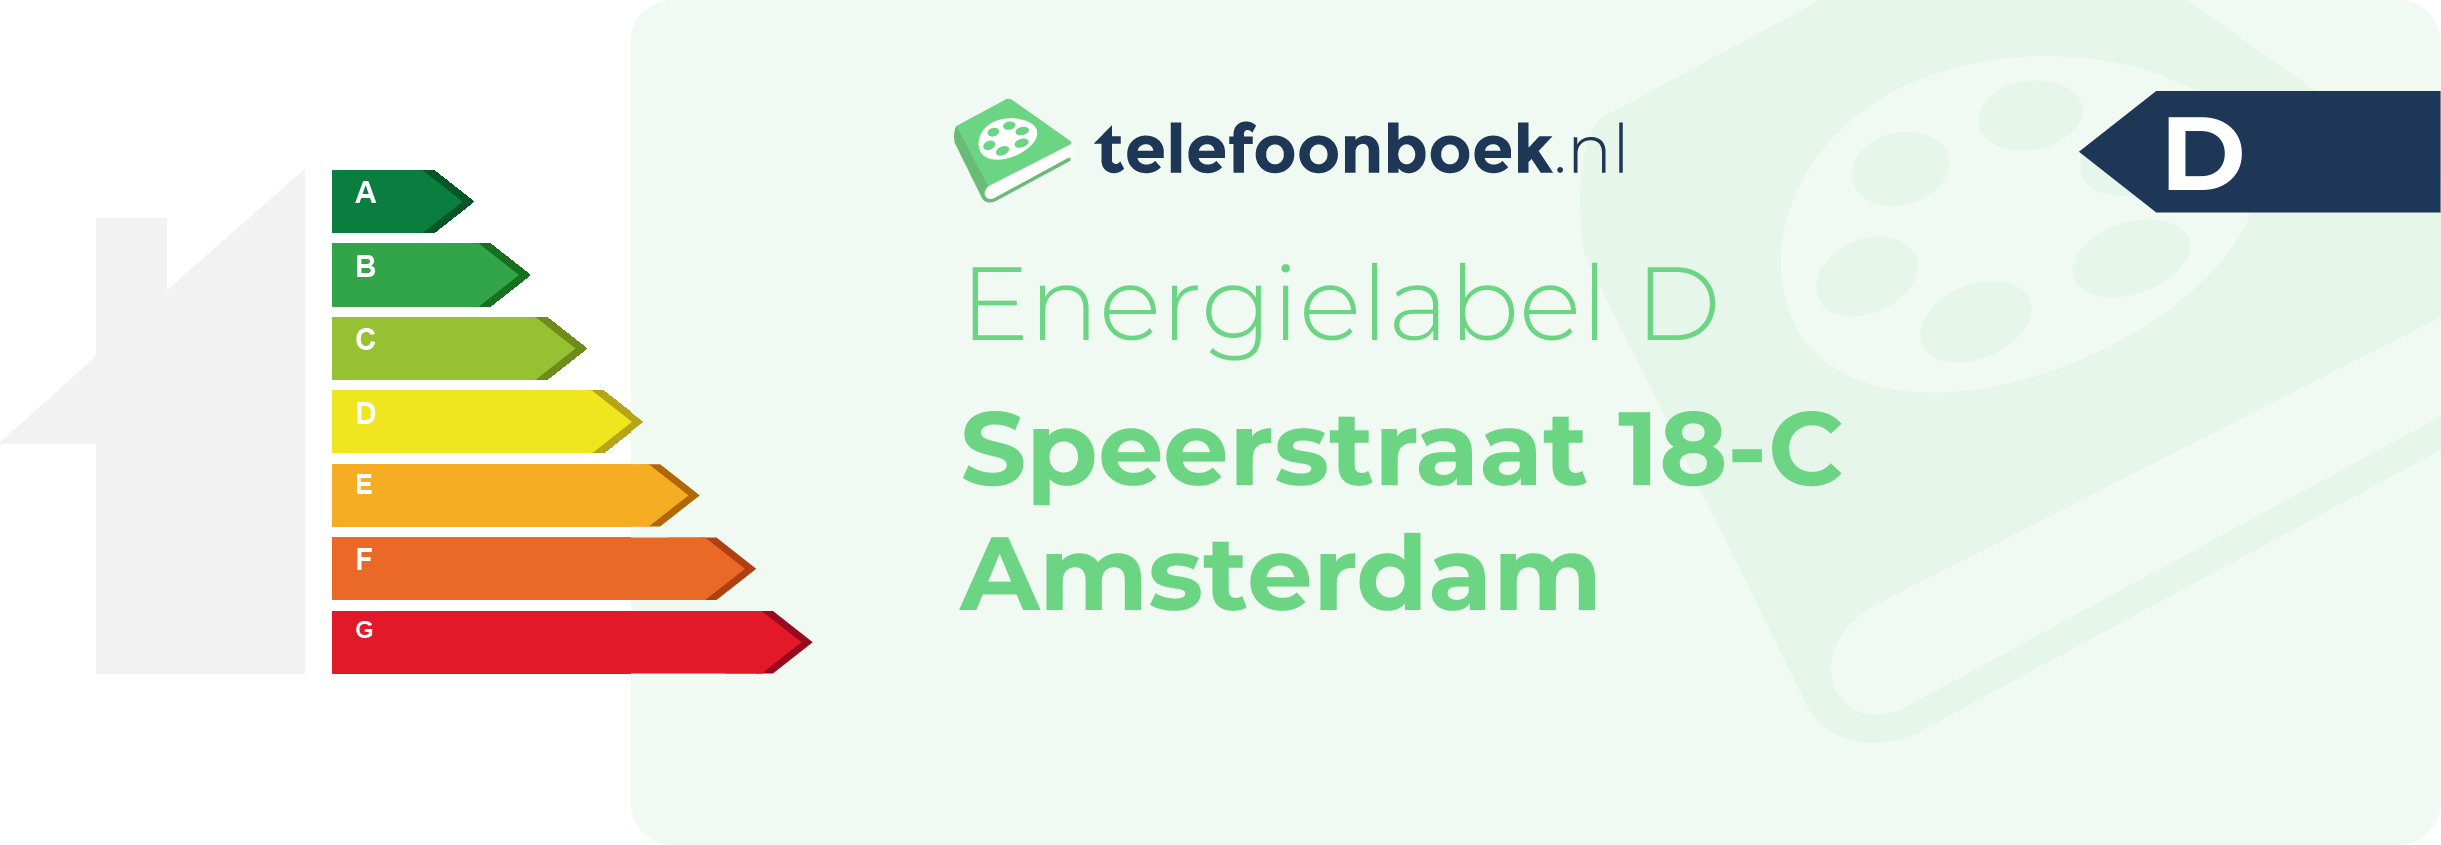 Energielabel Speerstraat 18-C Amsterdam